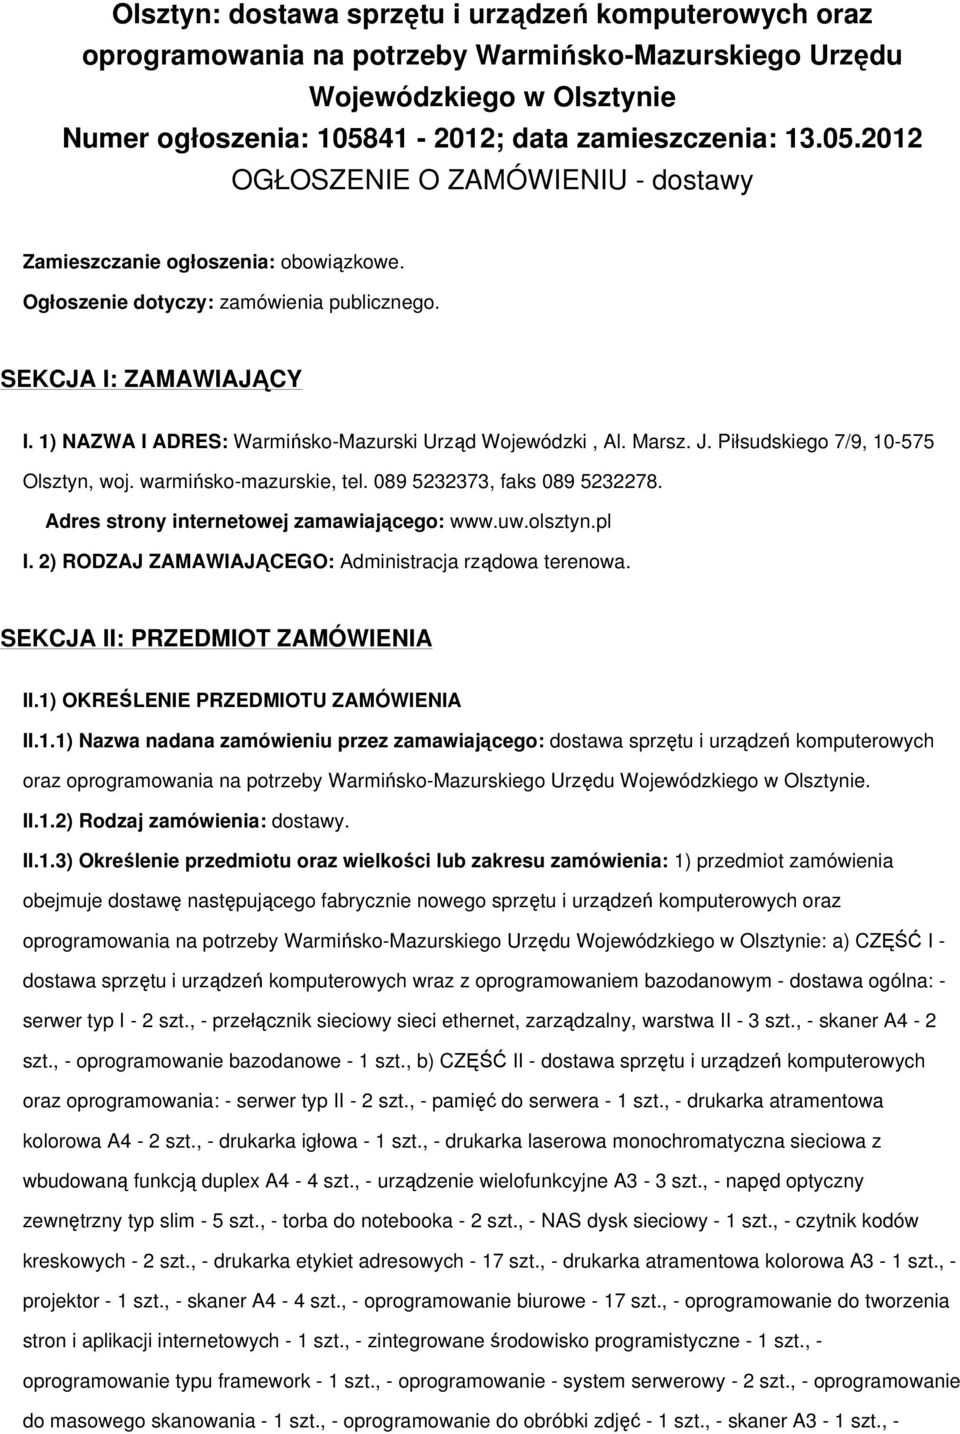 1) NAZWA I ADRES: Warmińsko-Mazurski Urząd Wojewódzki, Al. Marsz. J. Piłsudskiego 7/9, 10-575 Olsztyn, woj. warmińsko-mazurskie, tel. 089 5232373, faks 089 5232278.